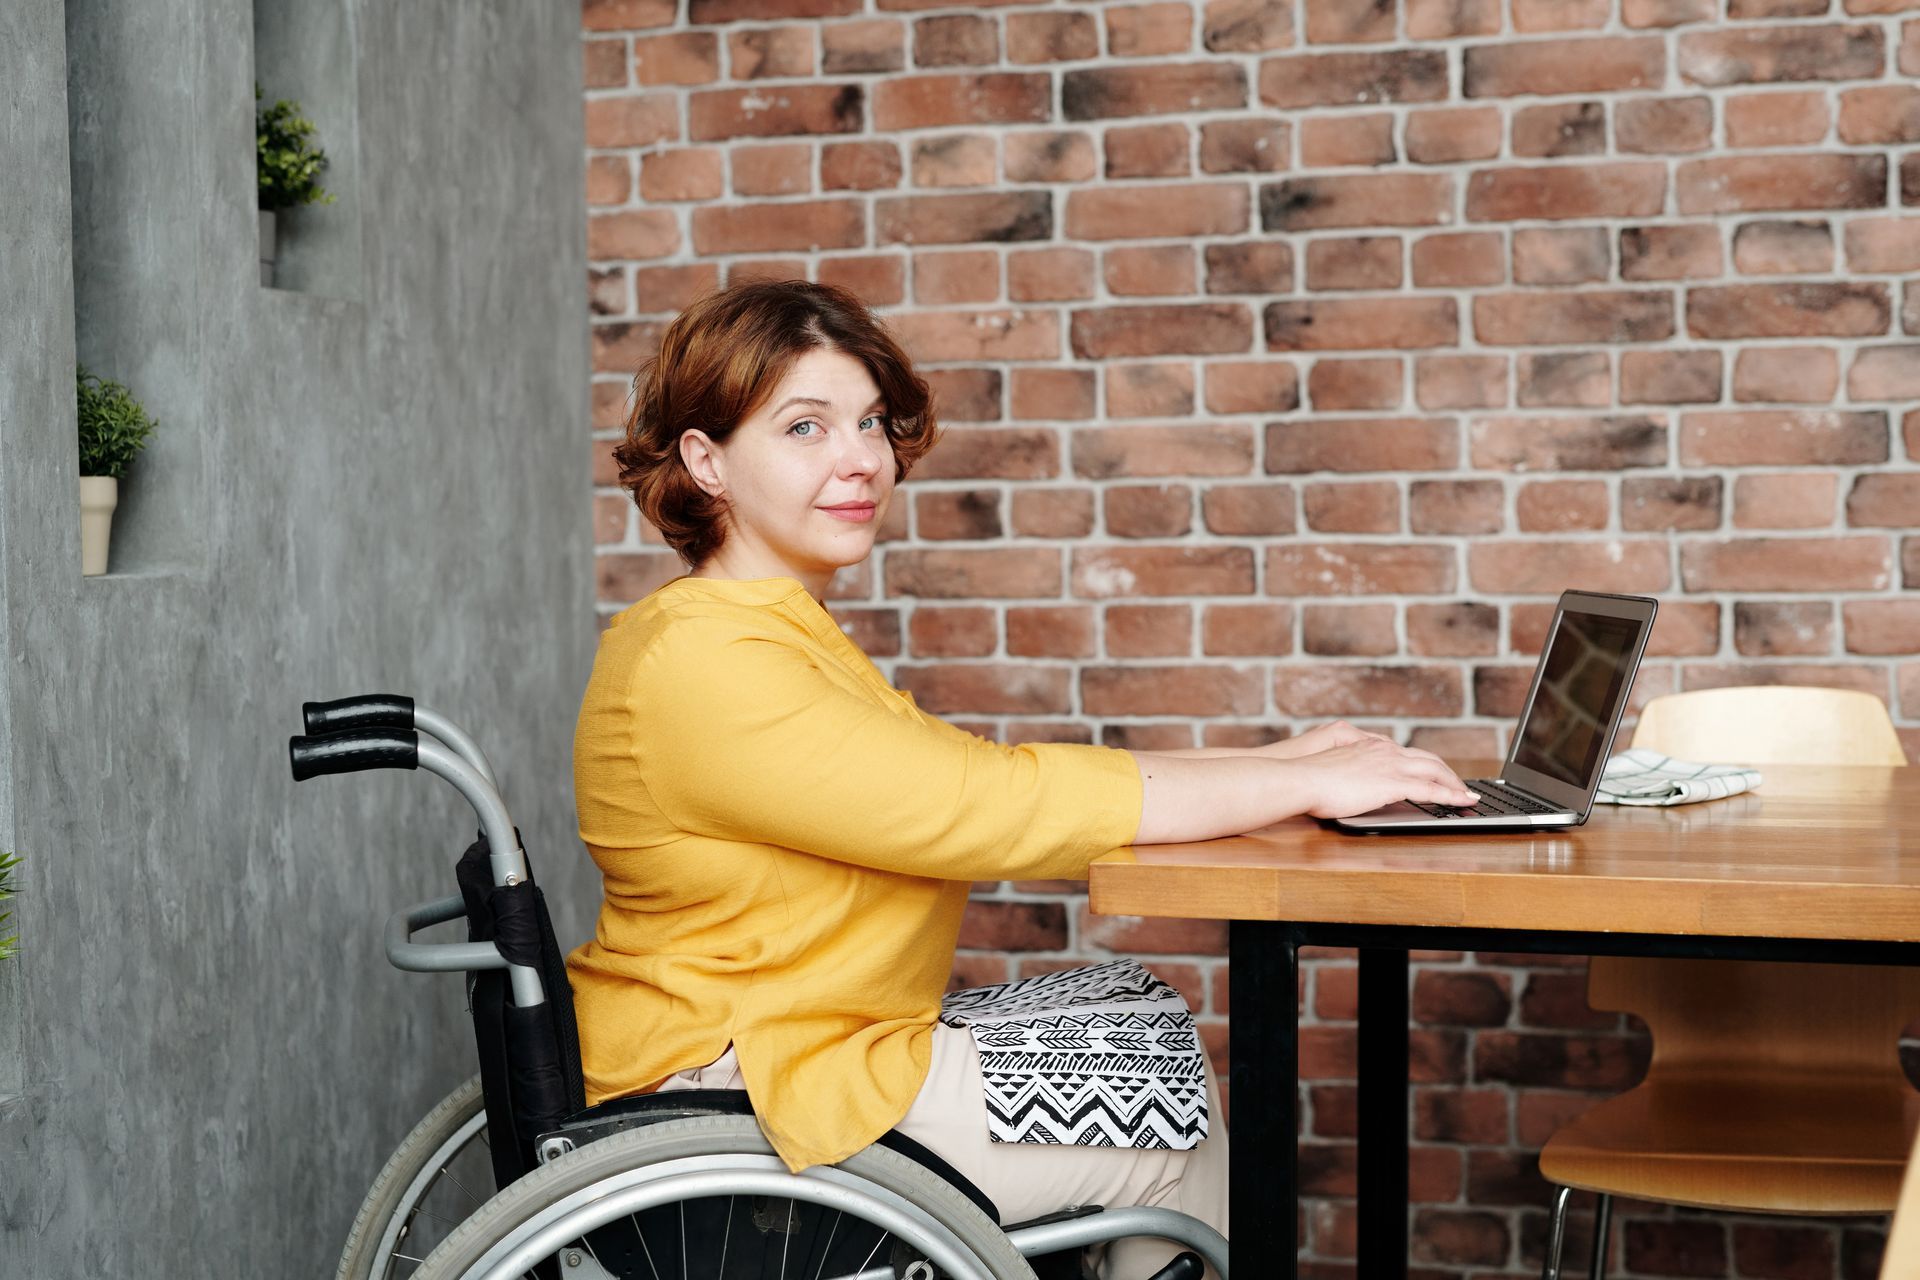 Personne handicapée suivant une formation à distance sur un ordinateur